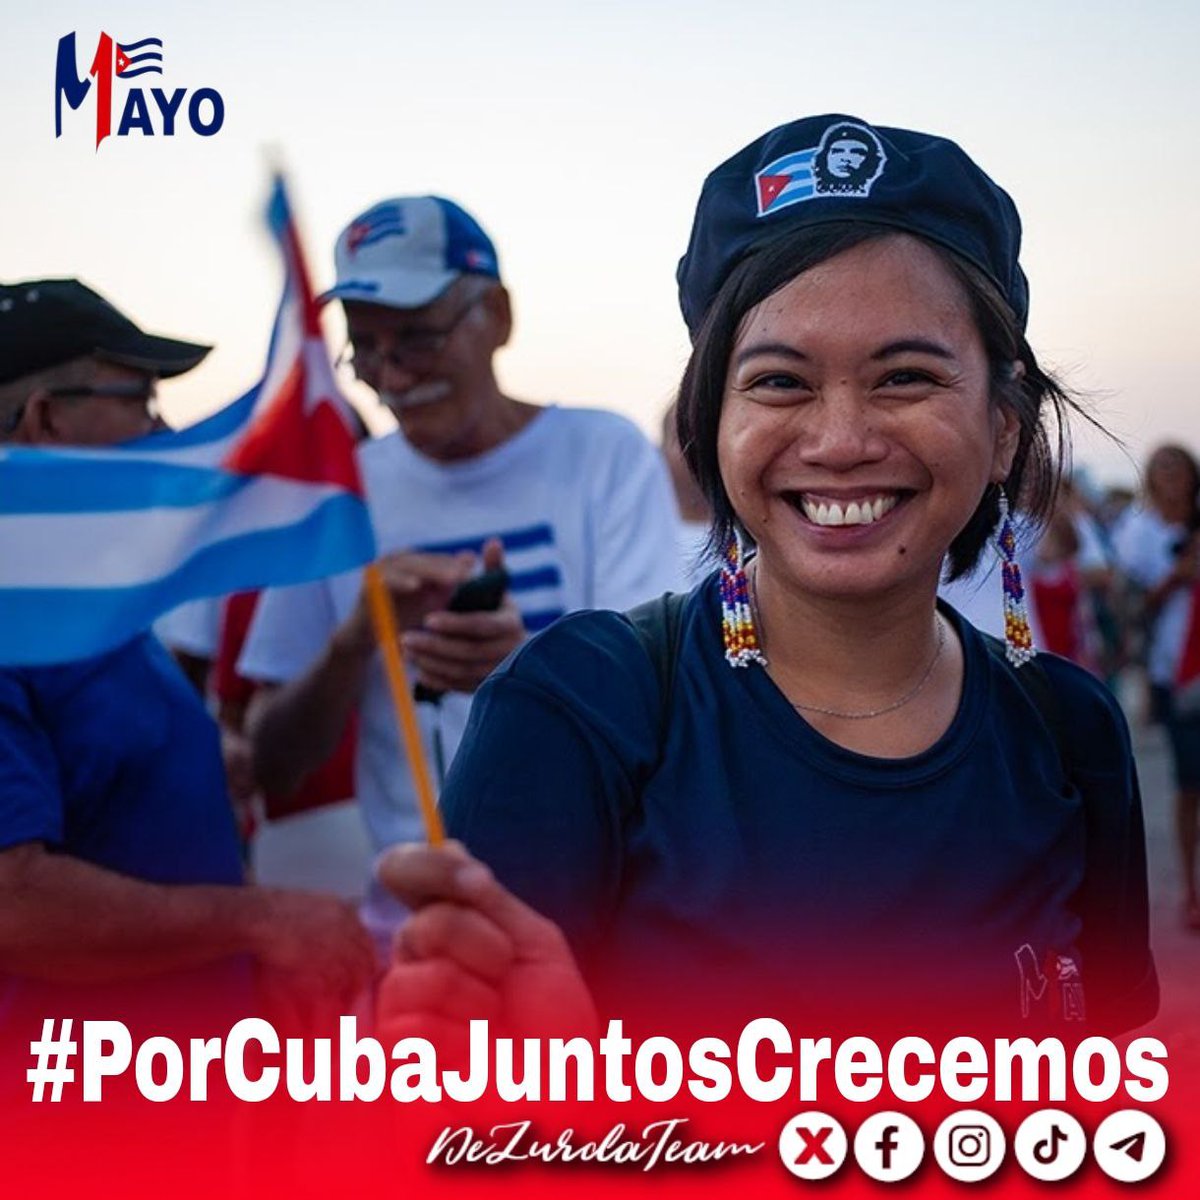 Ya casi vamos calentando los motores para este #1Mayo.
#UnLatidoPor te invita a encontrar un desfile repleto de cubanos festejando que #PorCubaJuntosCreamos el Socialismo! #Cuba @Barbara78904587 @HospitalPs57596 @LiannaMartnez @MTrigueroCruz